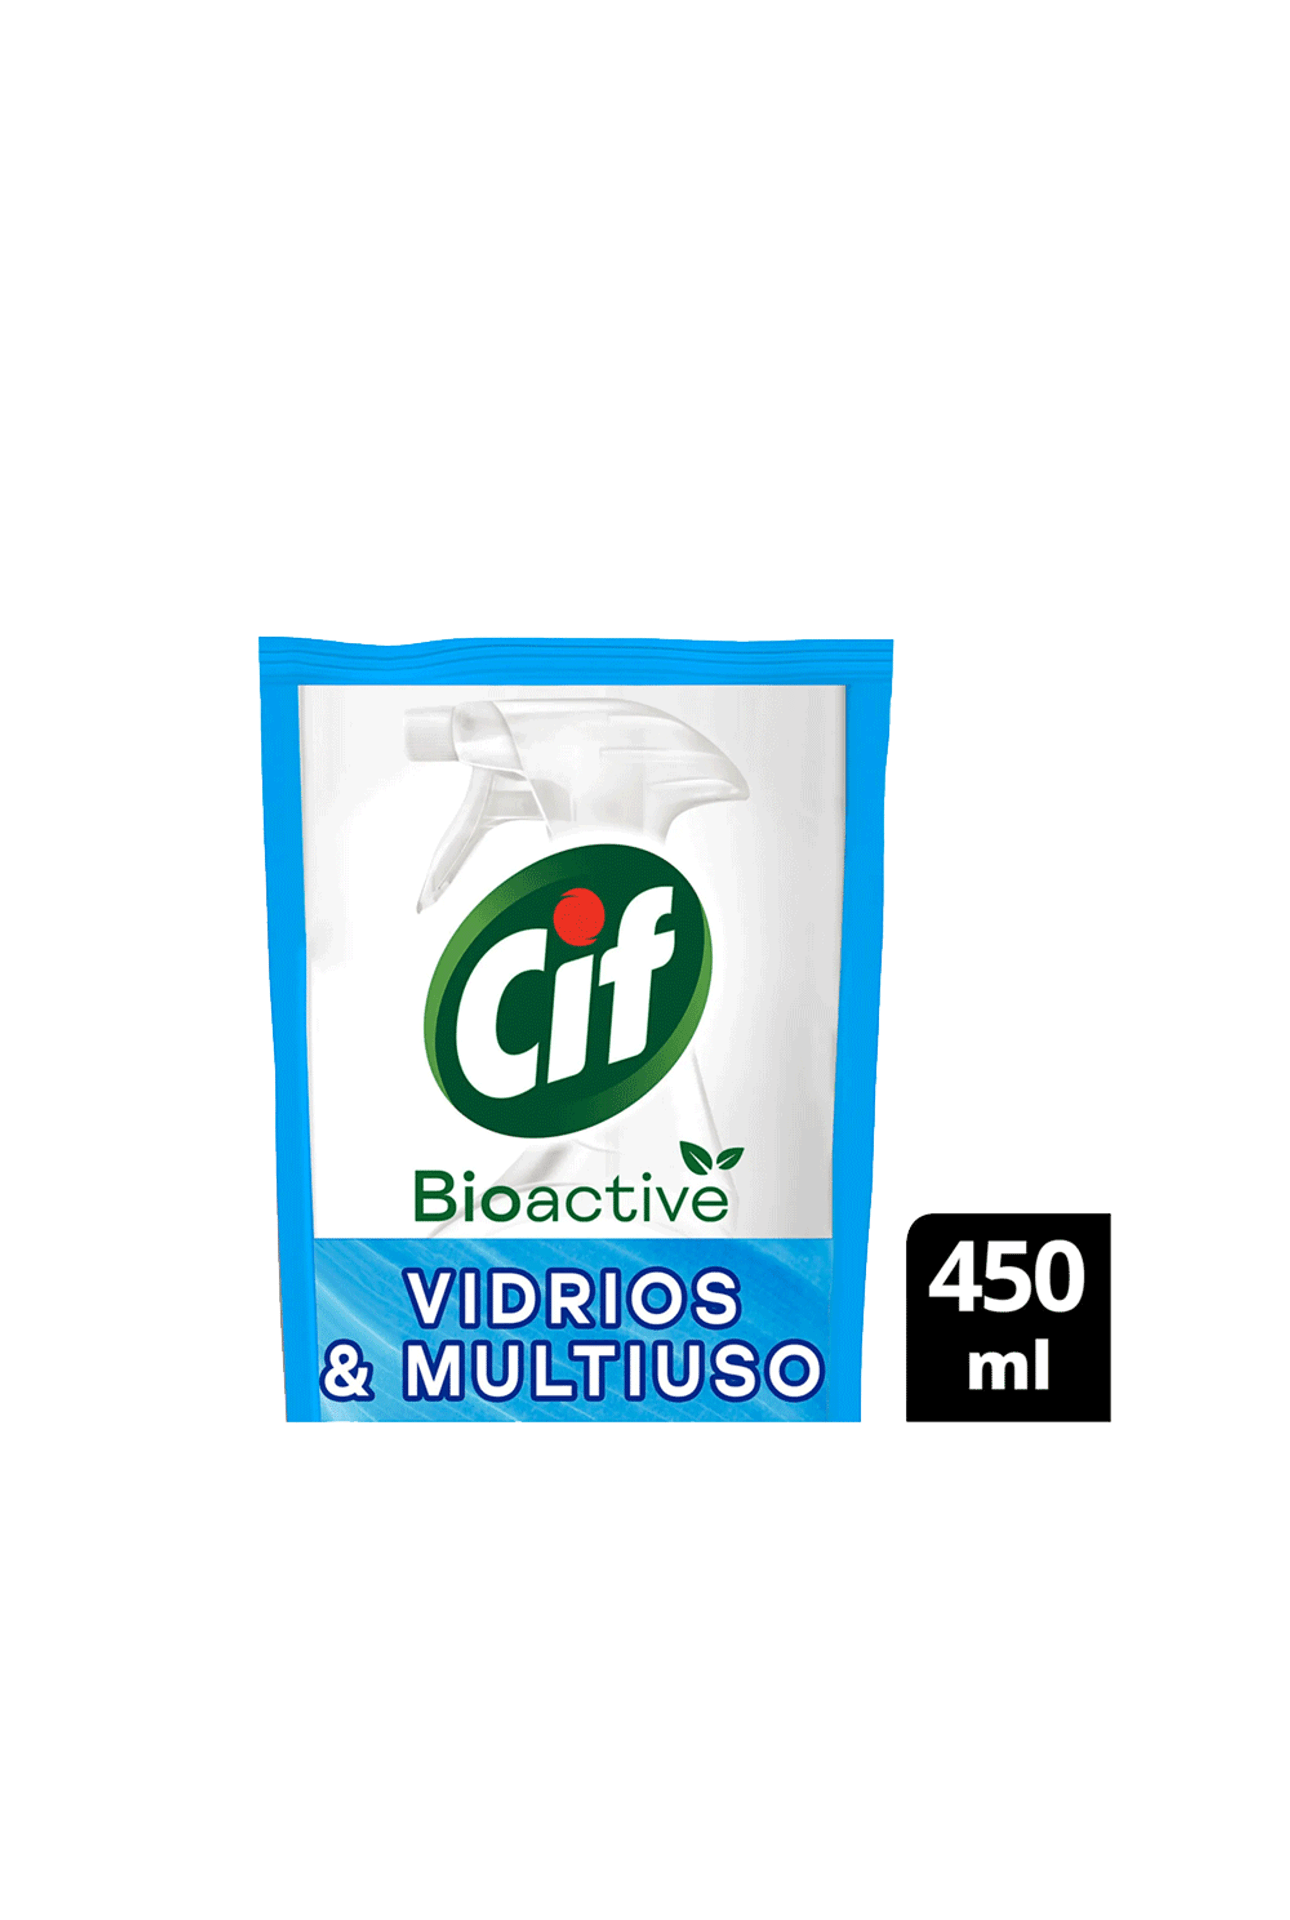 Cif-Limpiador-Vidrios---Multiuso-Cif-Bioactive-x-450-ml-7791290794450_img1